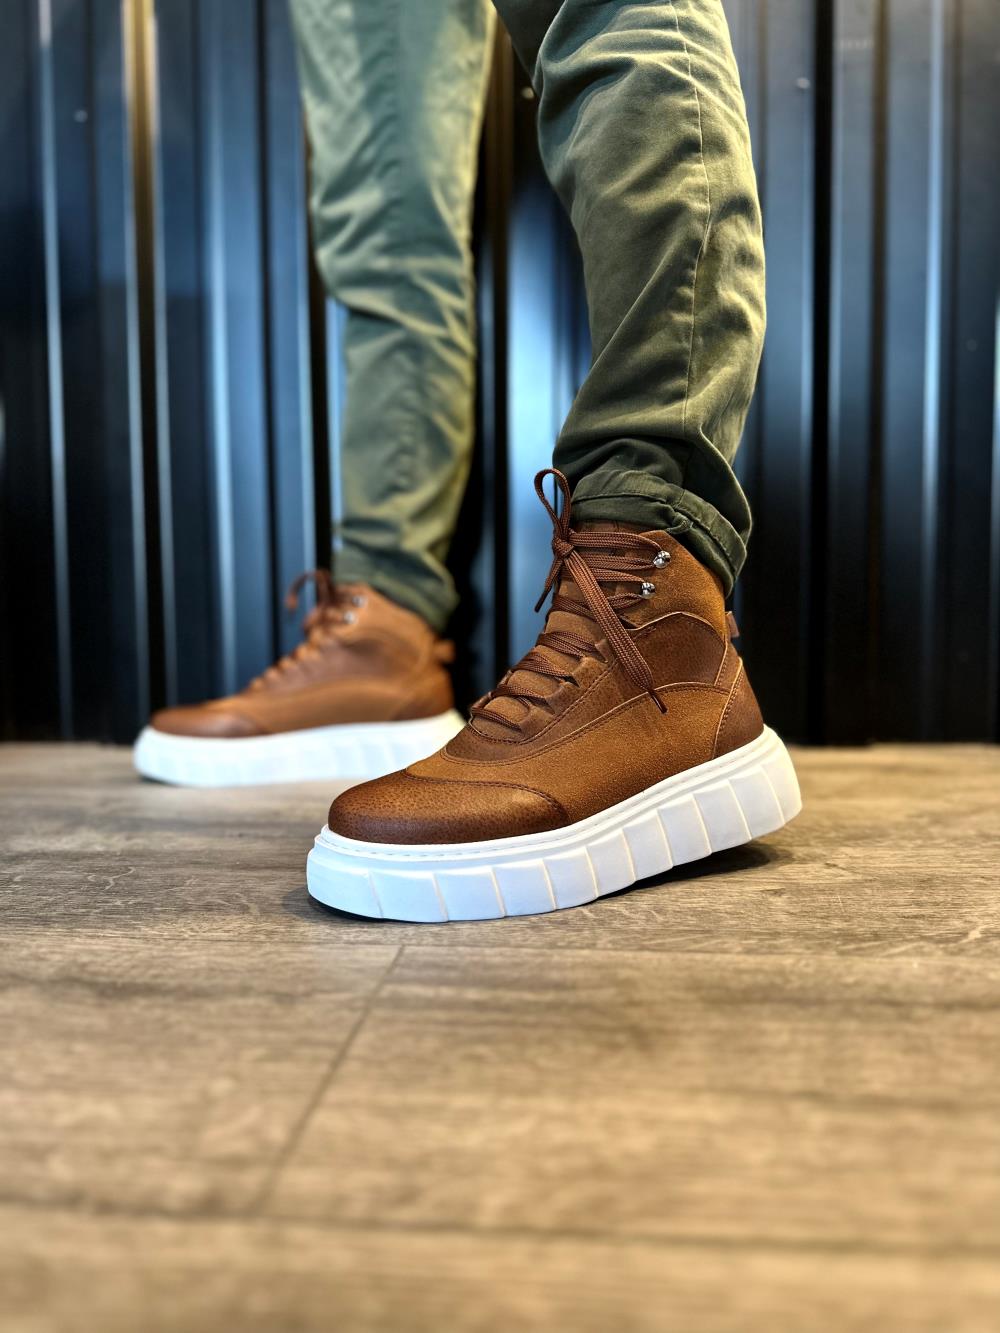 Men's High Heel Boots 104 Brown - STREETMODE ™